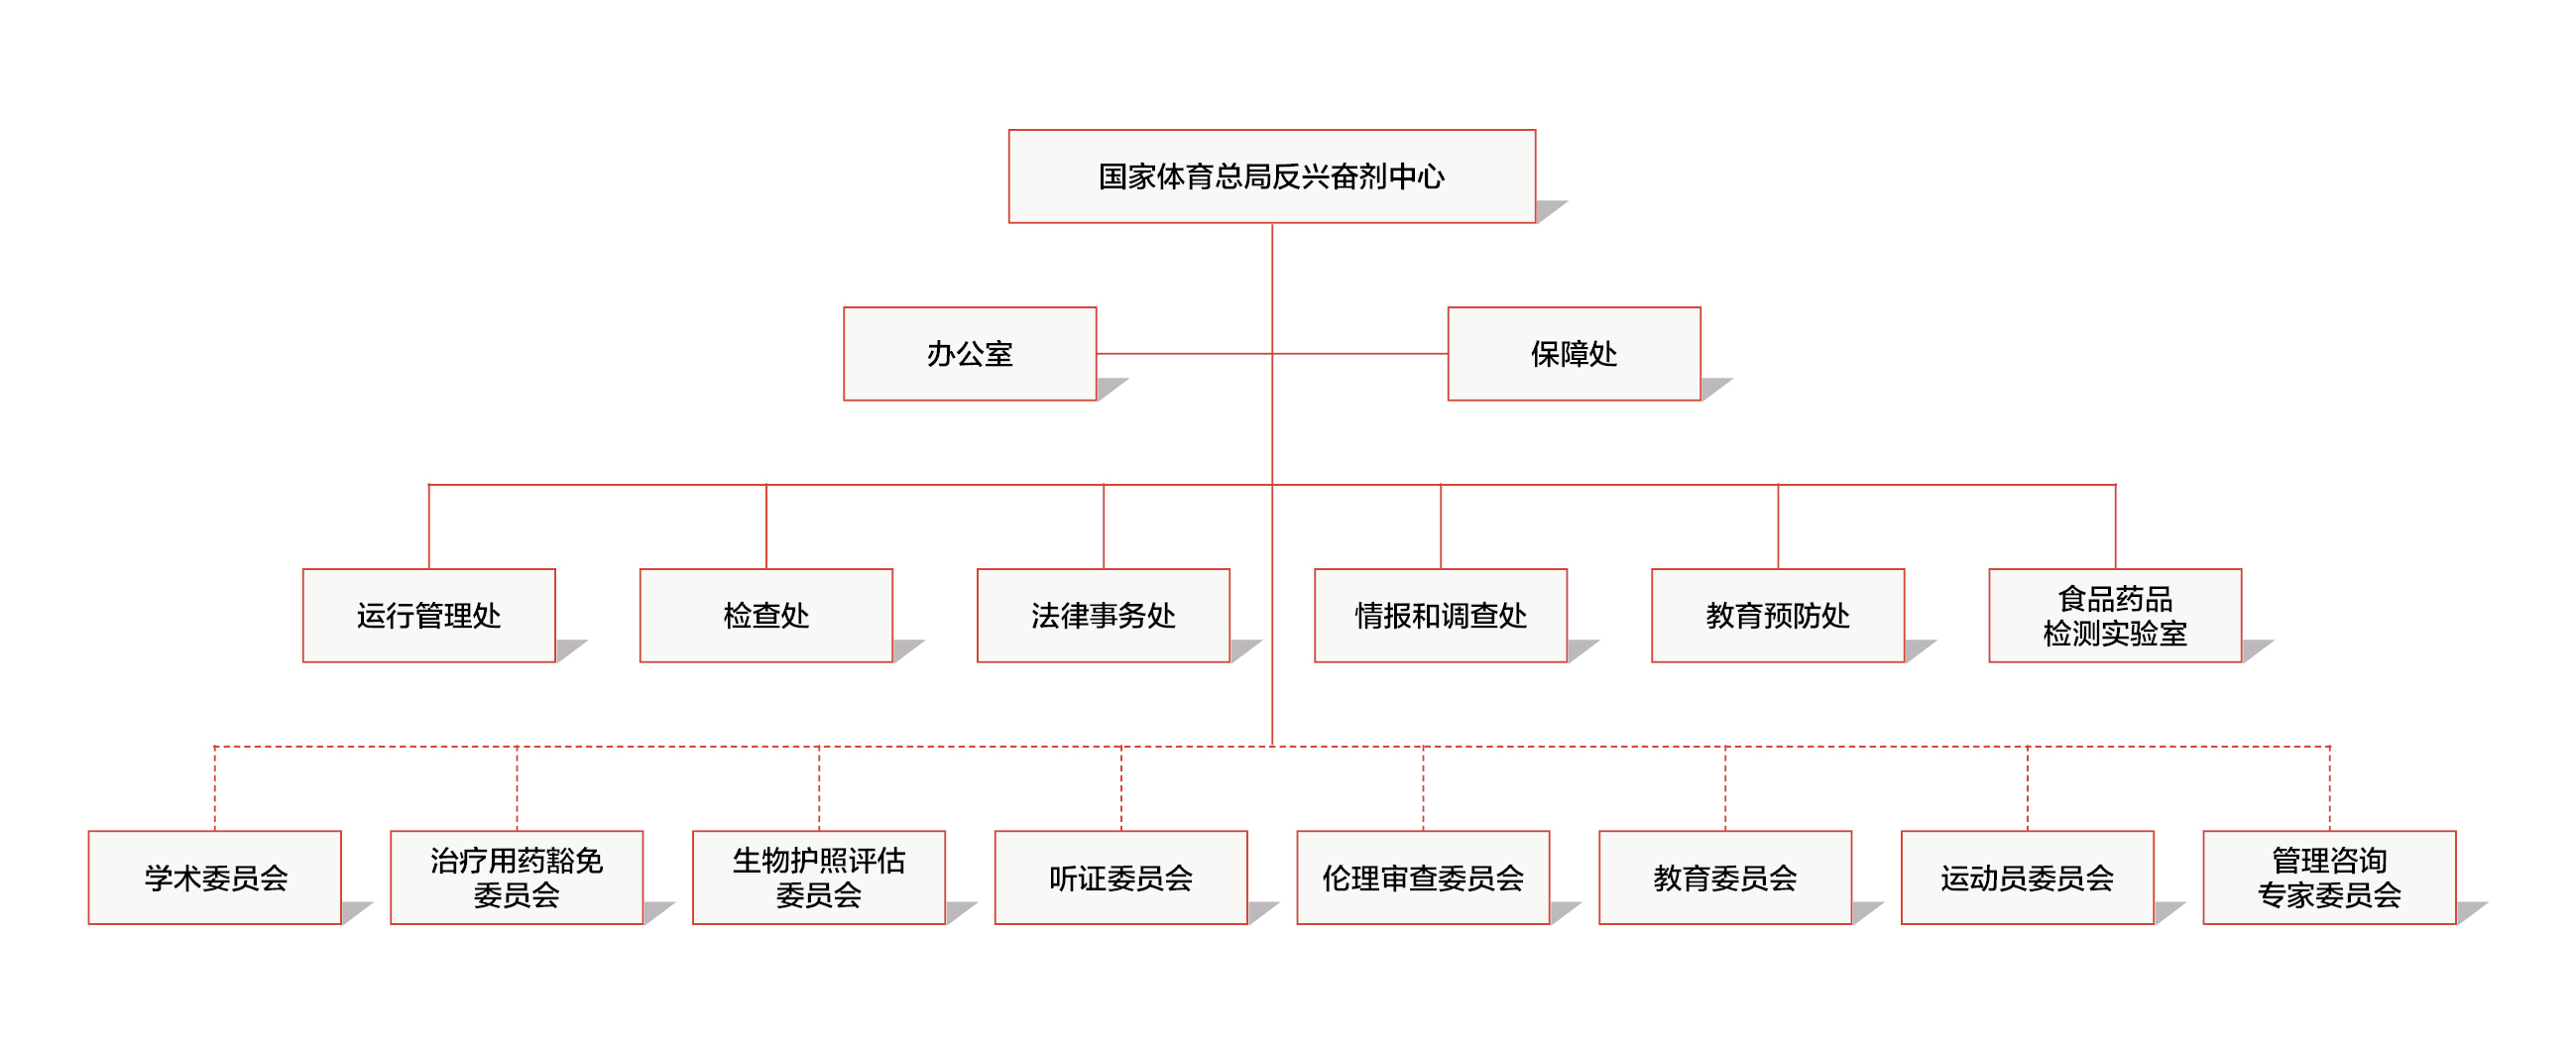 组织结构图.jpg